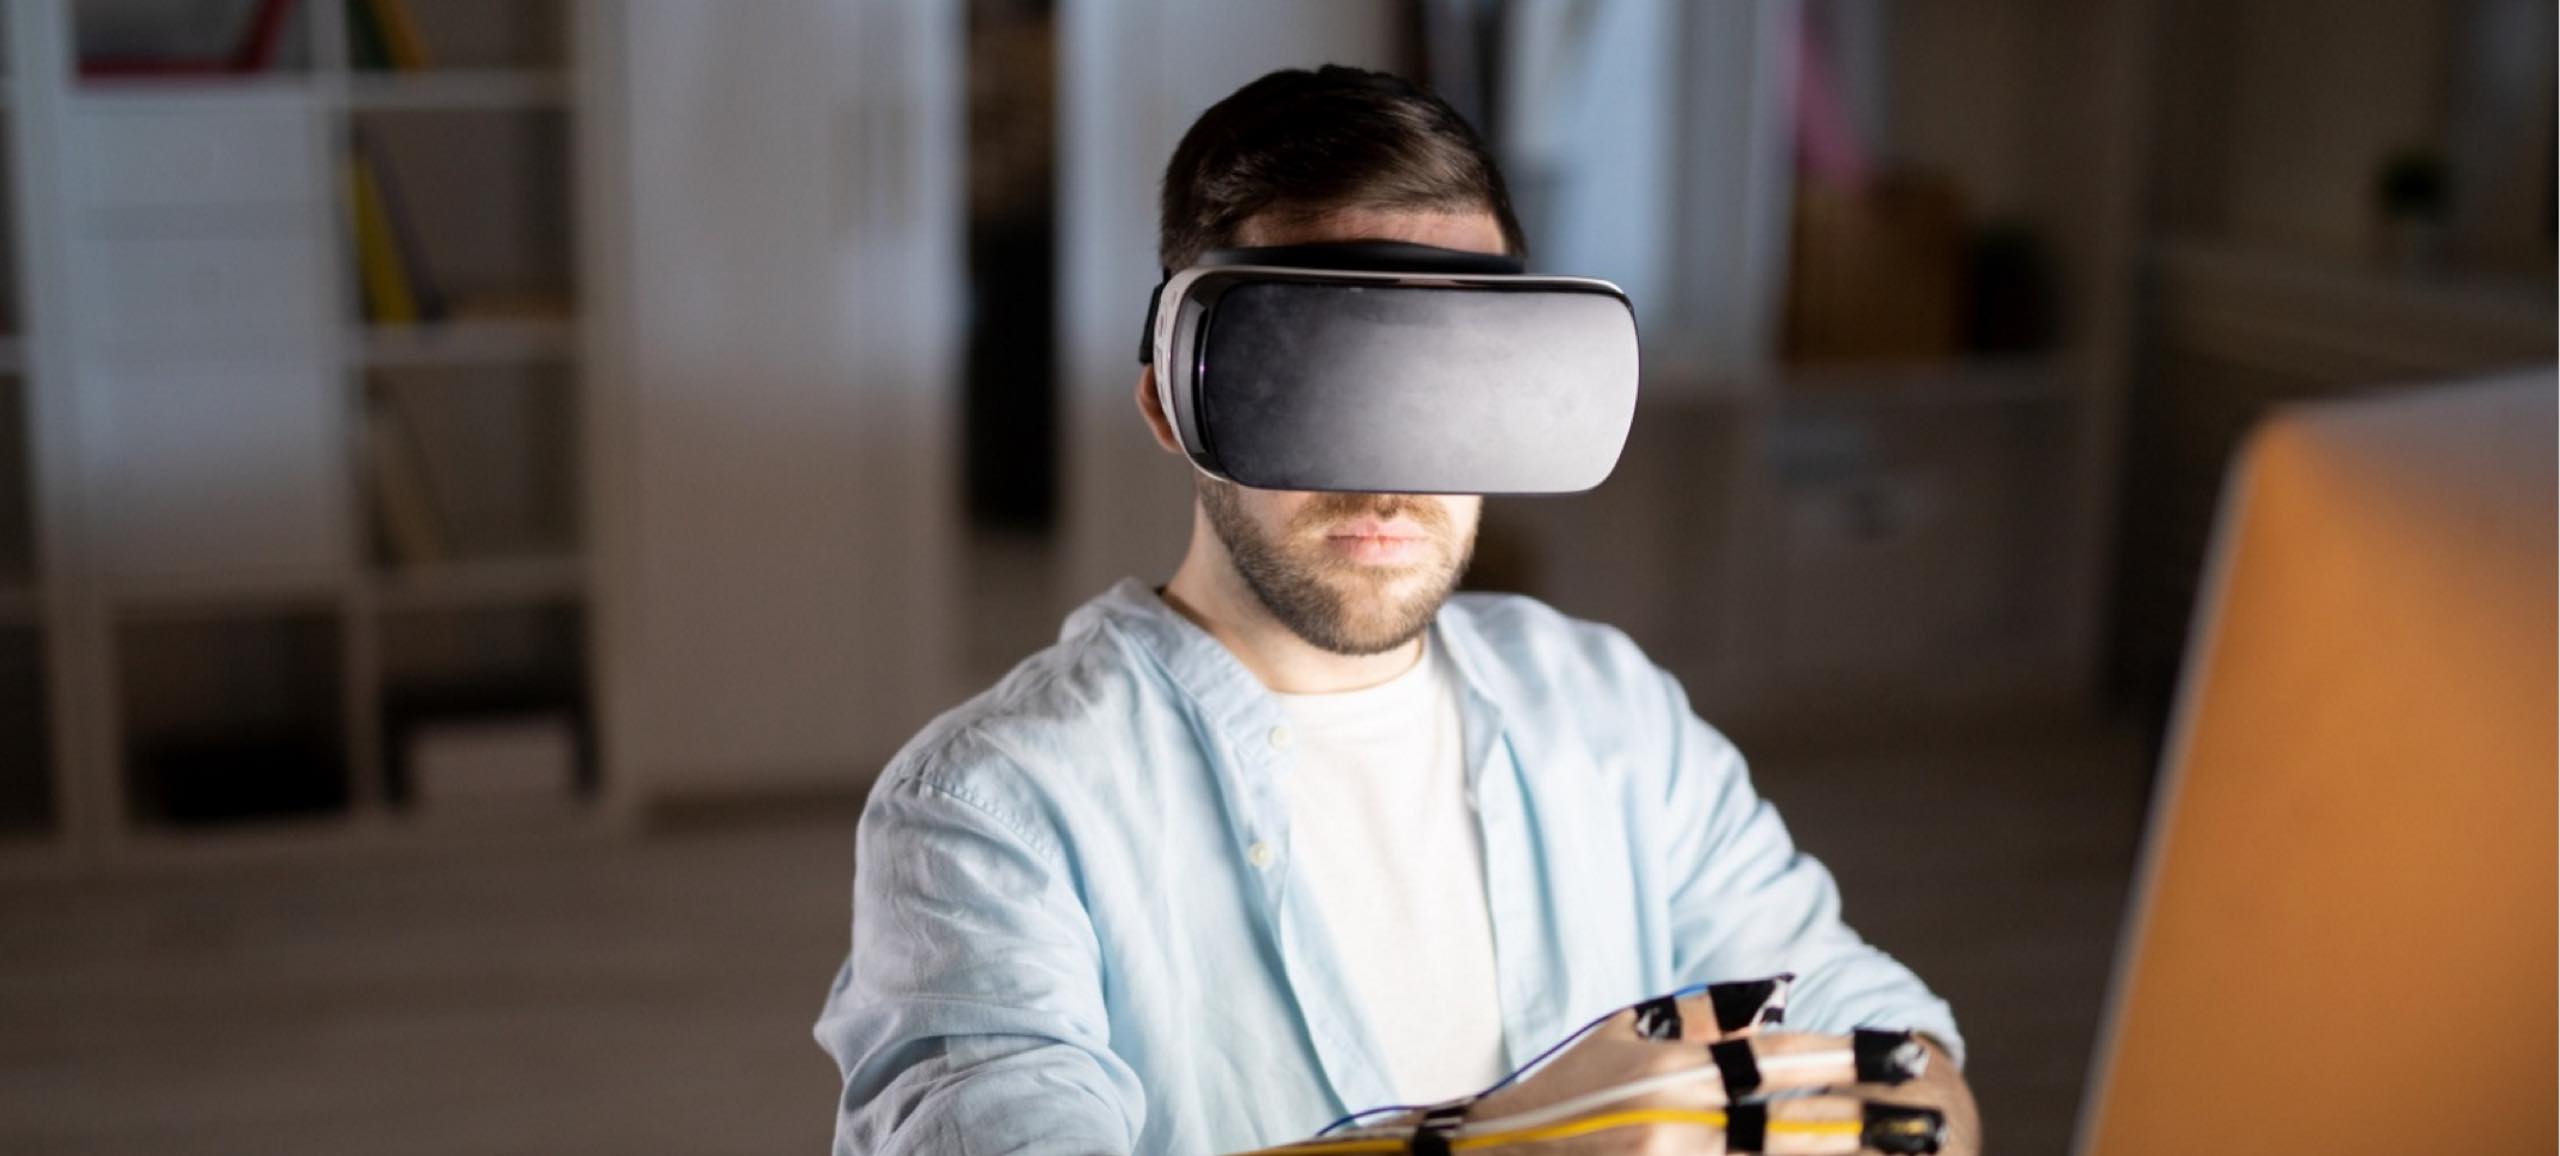 كيف يمكن لتقنيات الواقع الافتراضي والمعزز أن تغير من نمط حياتنا؟